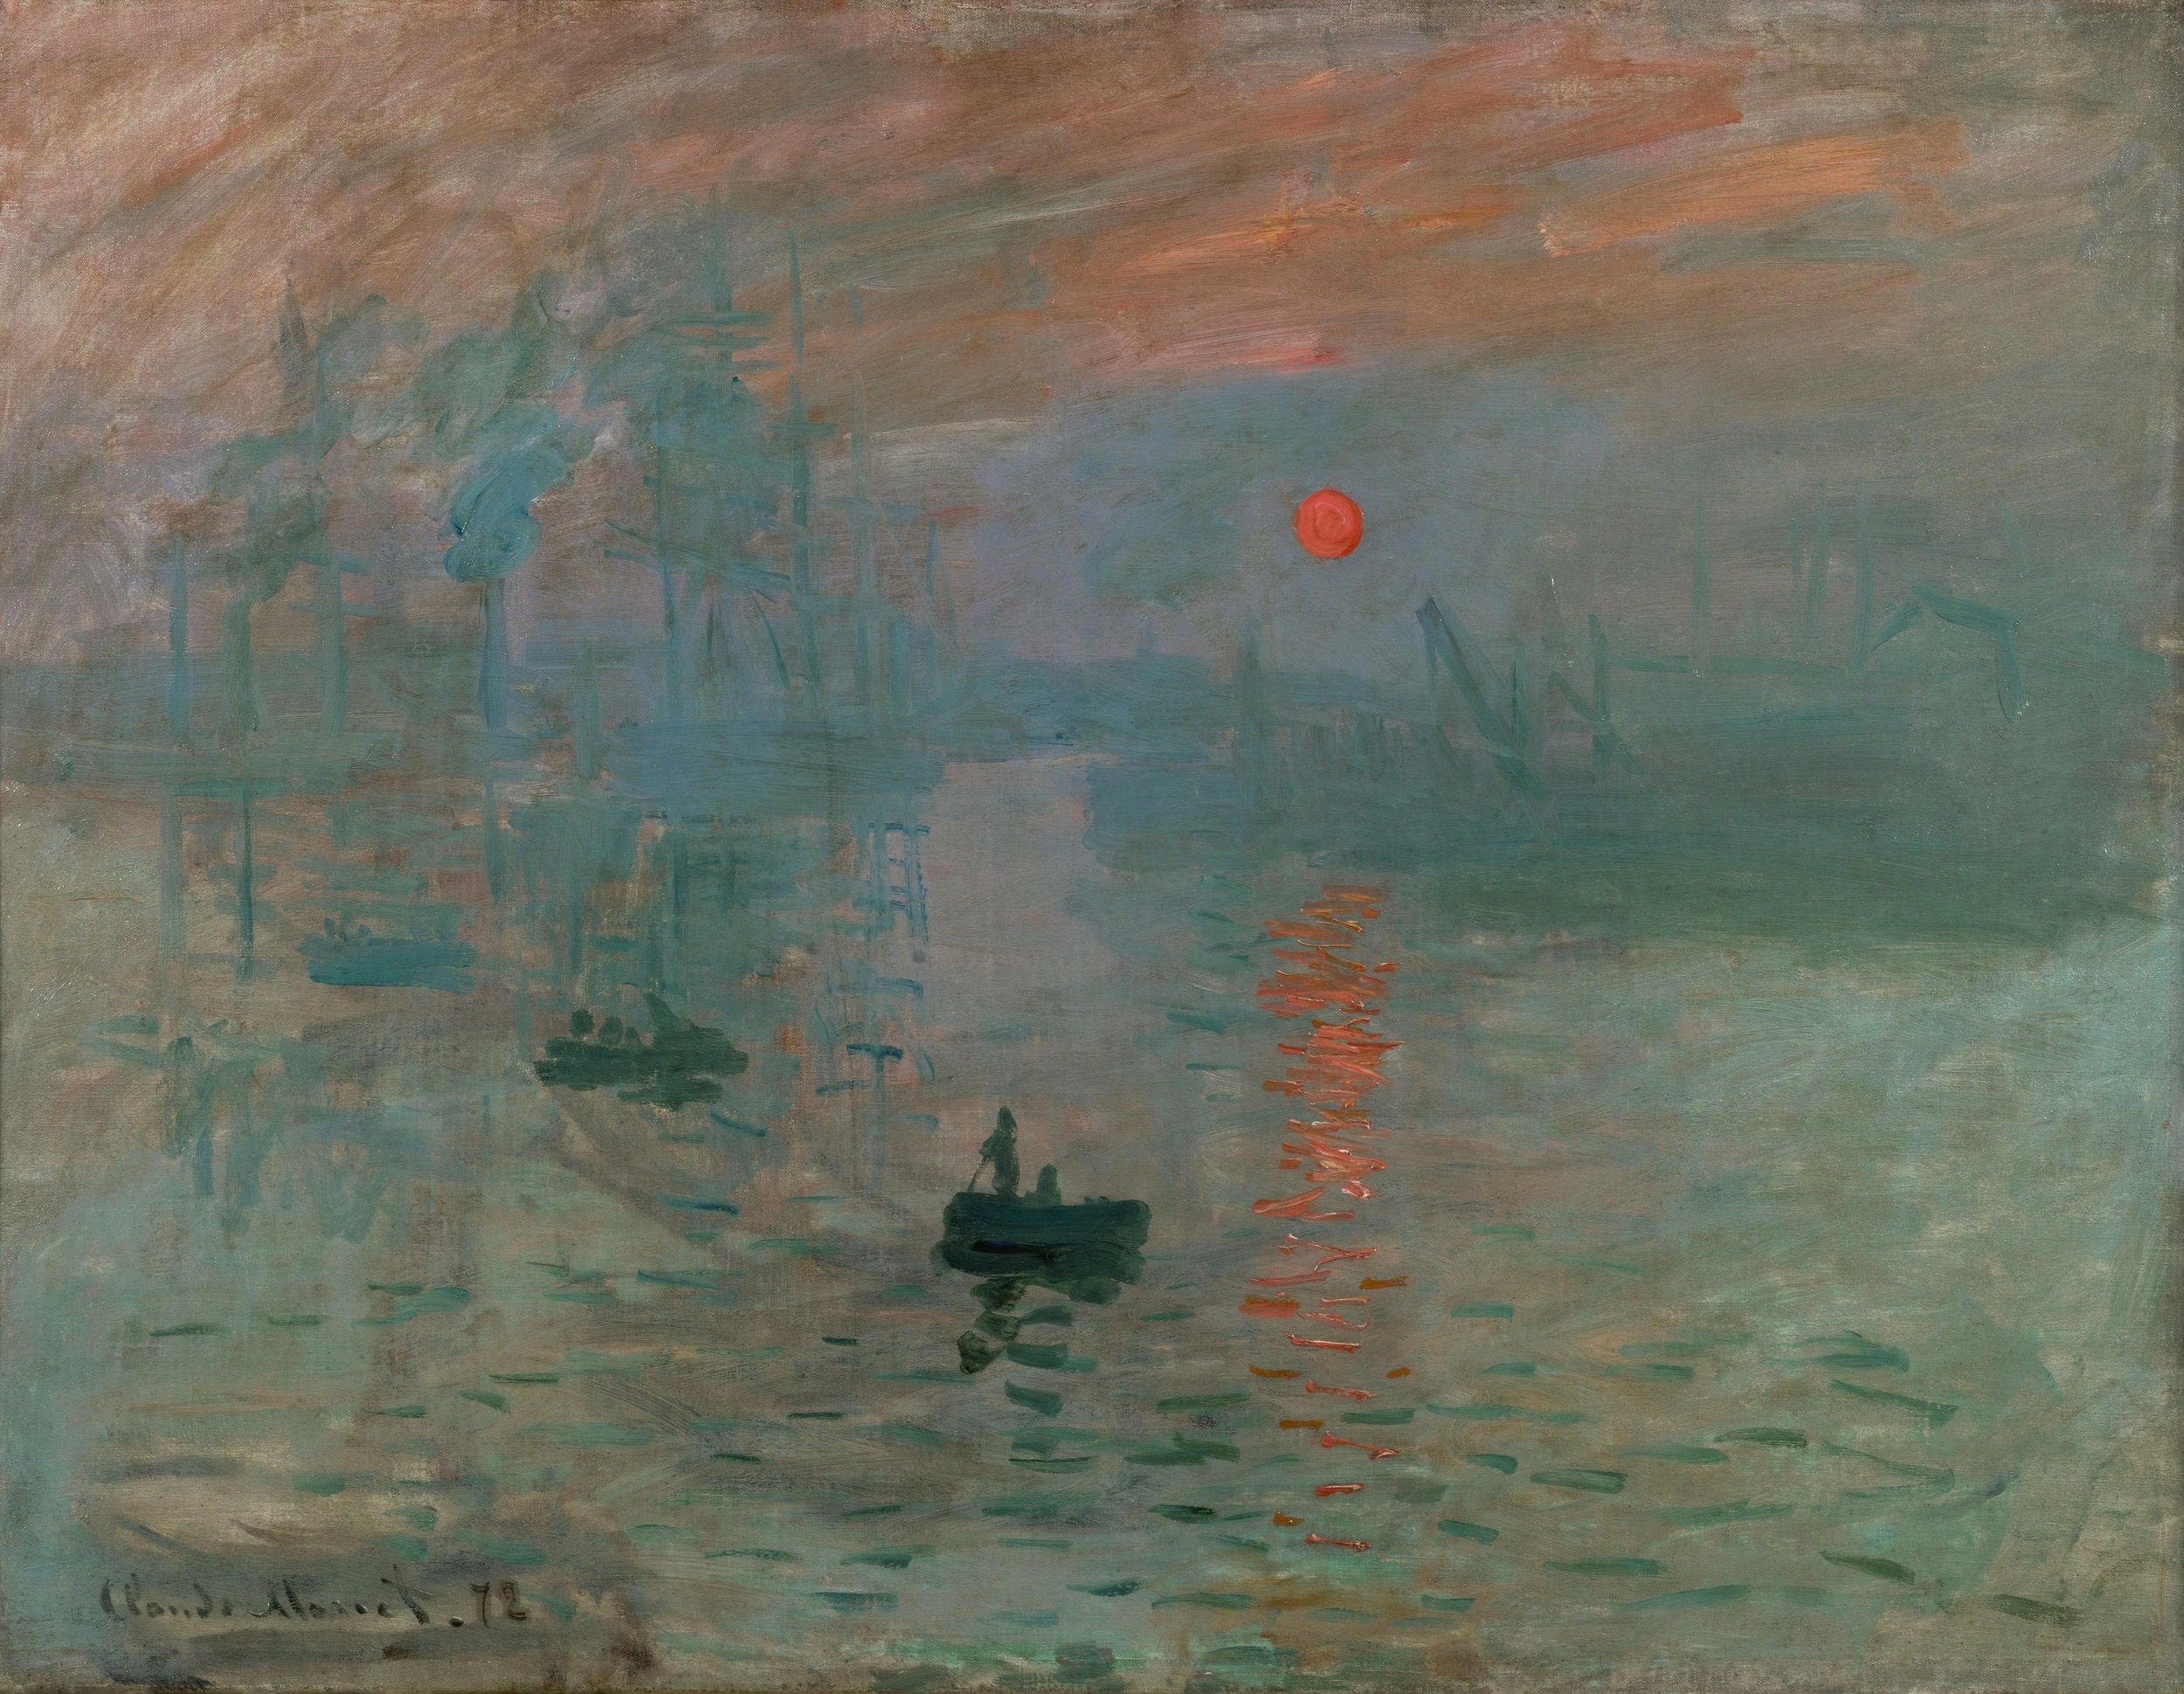 Claude Monet, Impression: Sunrise, 1872, oil on canvas (Musée Marmottan Monet, Paris)